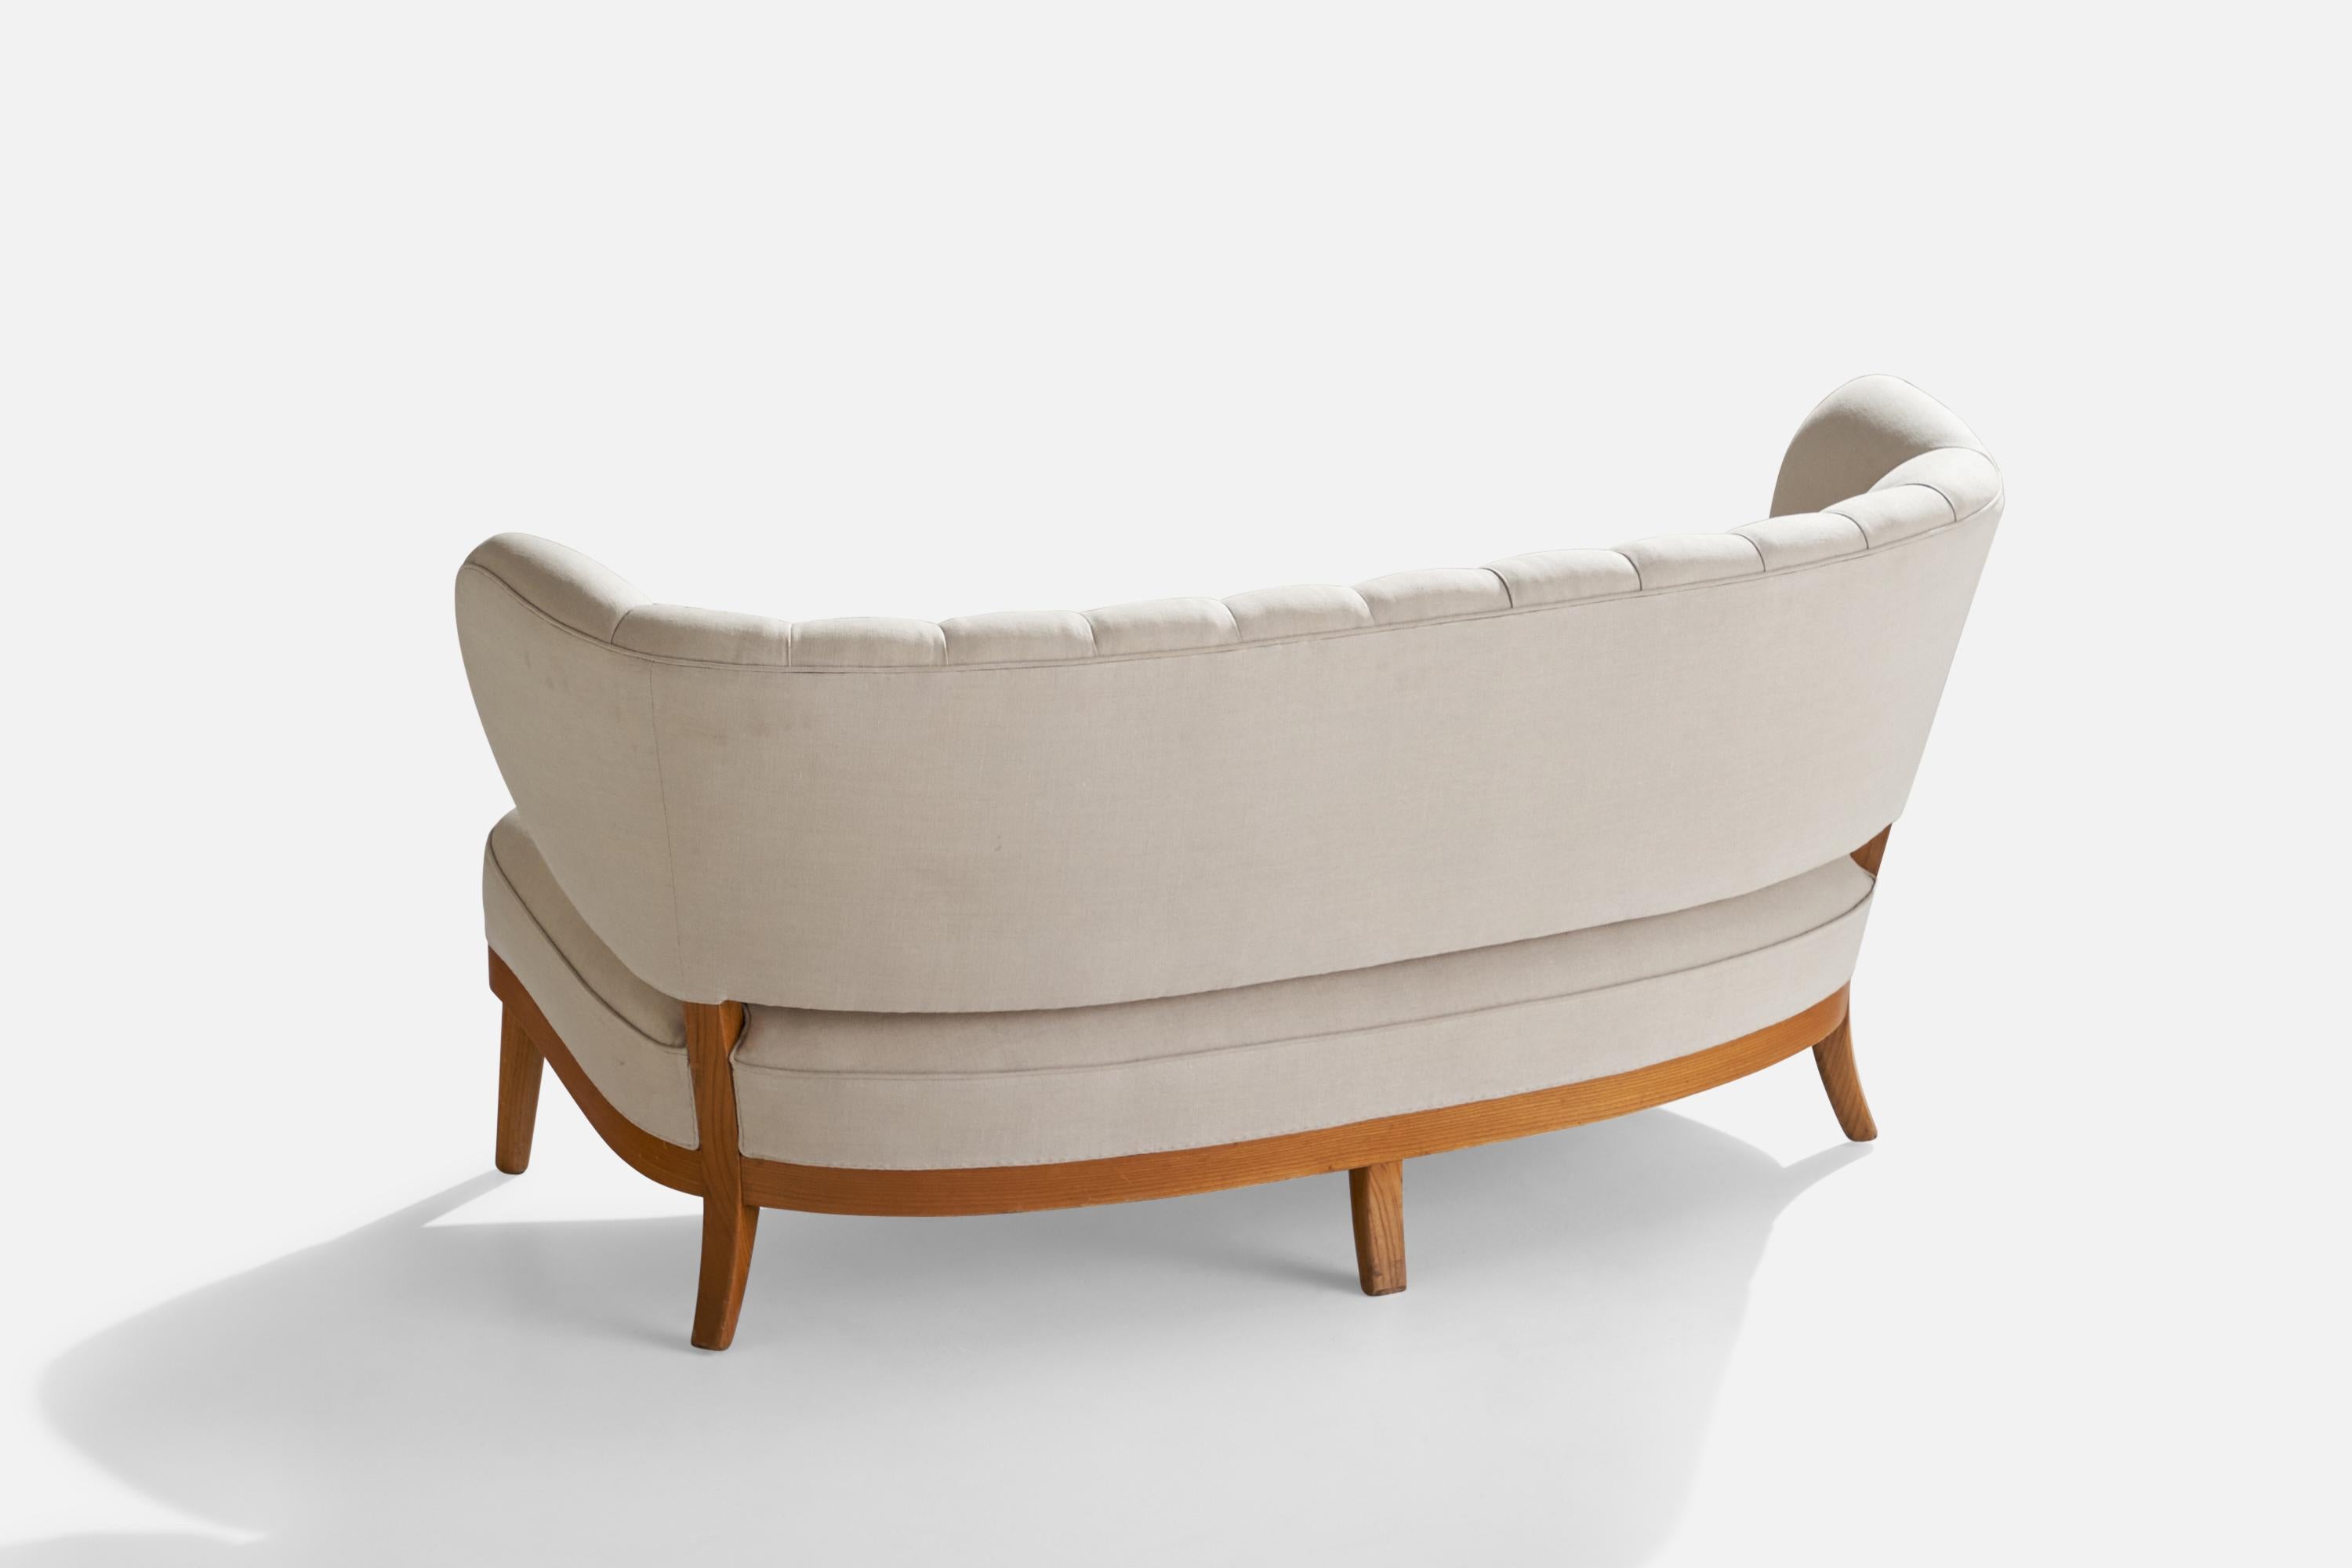 Canapé en tissu blanc cassé et orme conçu par Otto Schultz et produit par Boet, Suède, vers les années 1940.

Hauteur d'assise 16